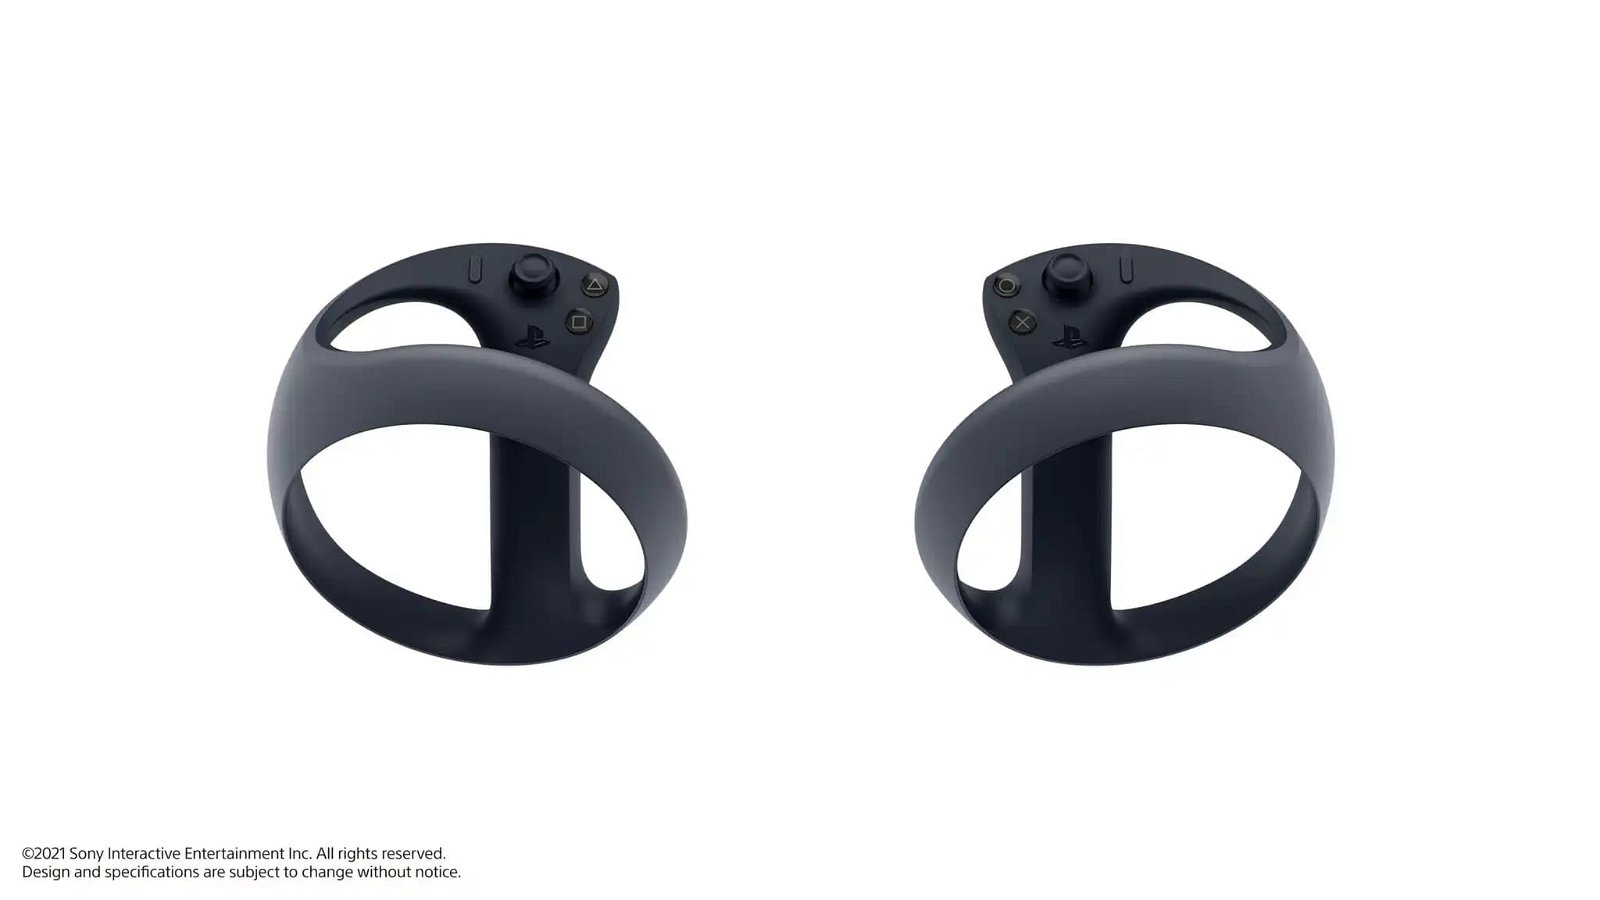 Mandos del nuevo dispositivo VR de PS5